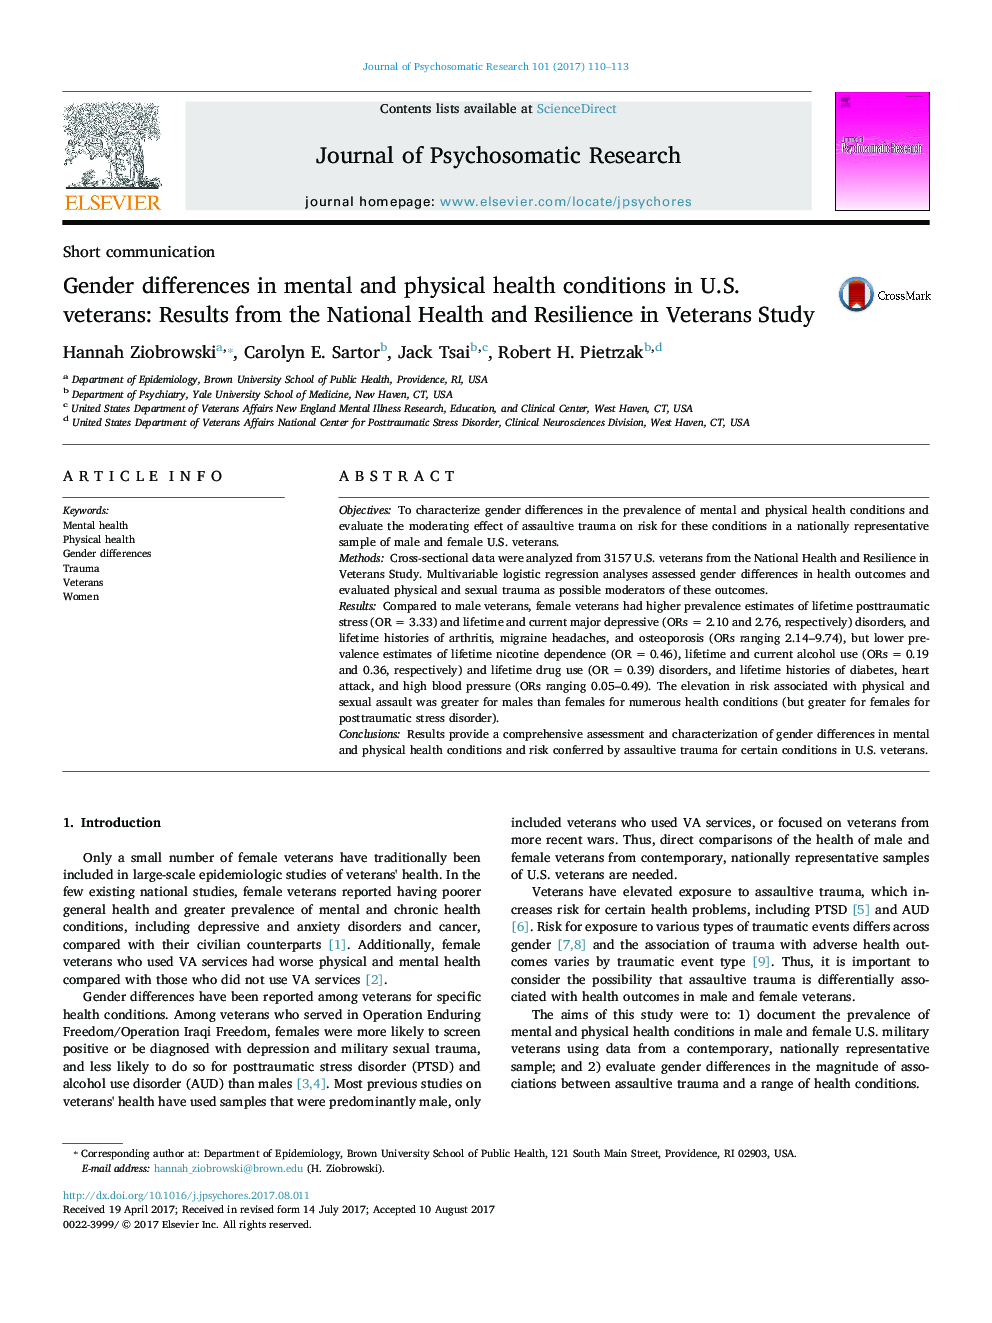 تفاوت های جنسیتی در شرایط سلامت روانی و جسمی در جانبازان آمریکایی: نتایج بهداشت و انعطاف پذیری ملی در مطالعه جانبازان 